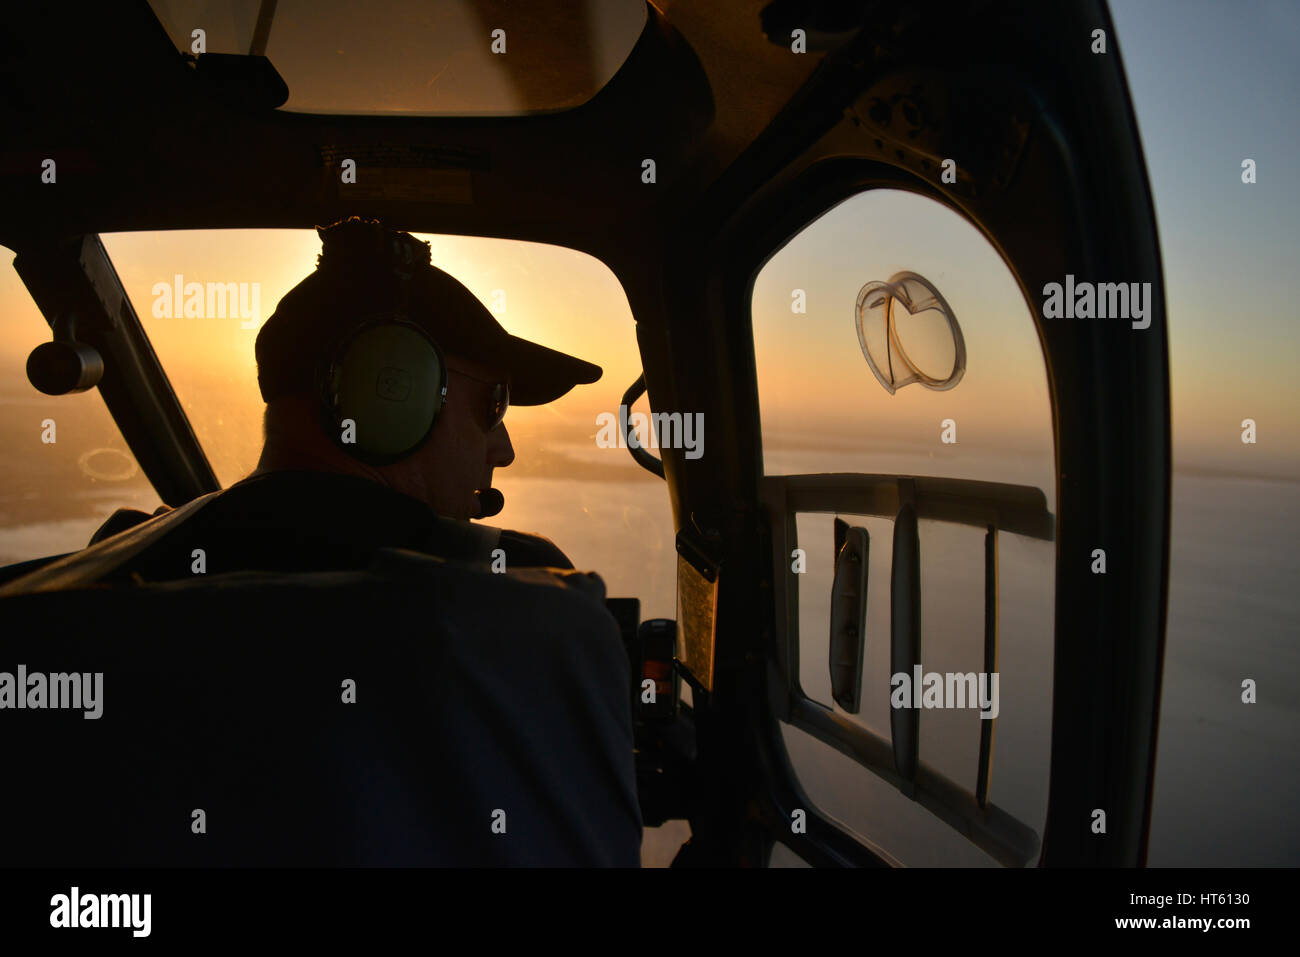 Ein Luftschuss des Innenraums eines Hubschraubers vom Typ Eurocopter AS350 mit Pilot-Silhouetten gegen die untergehende Sonne. Stockfoto